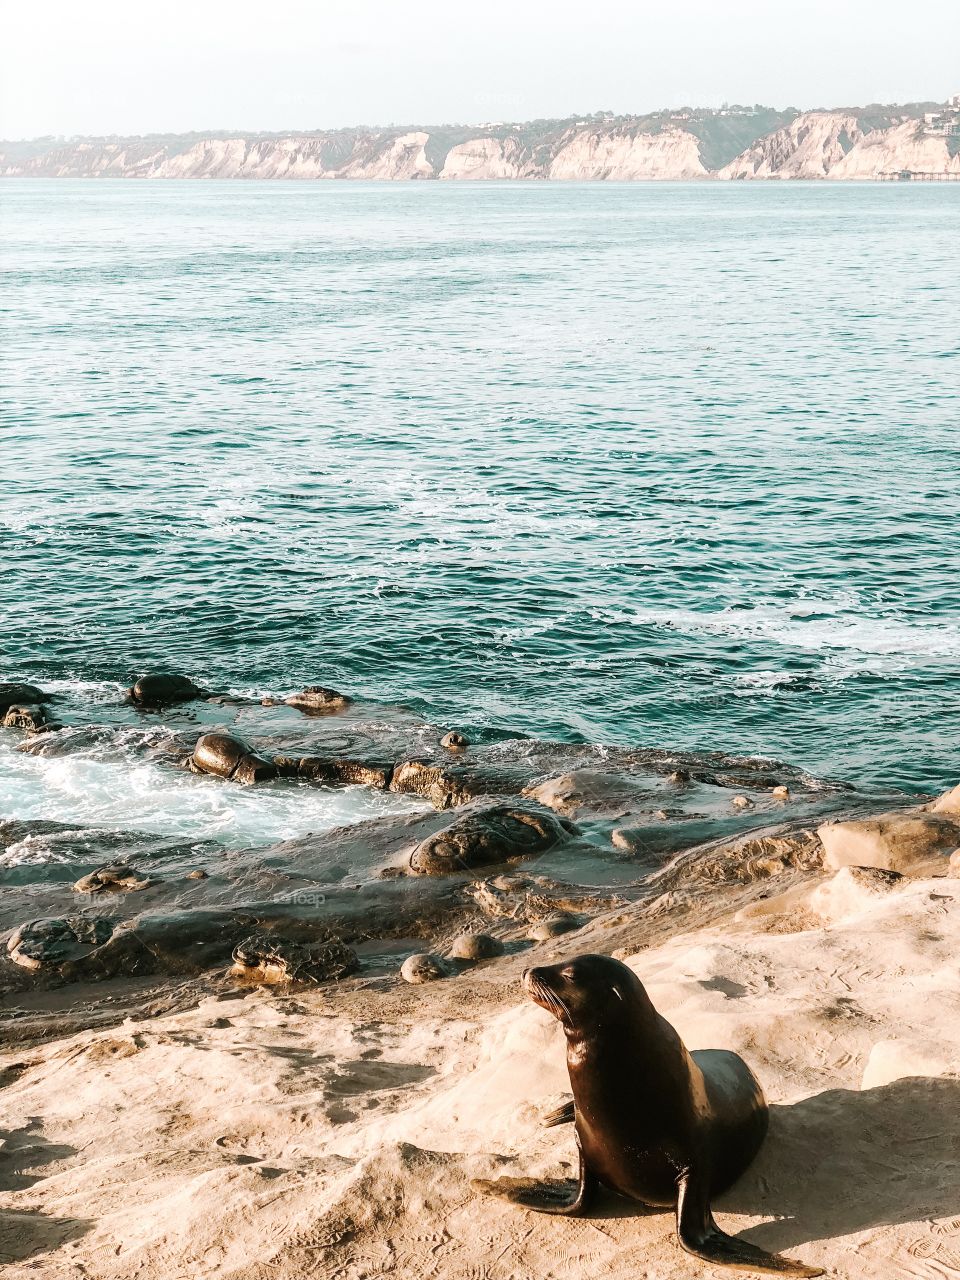 Seal chillin in Cali 